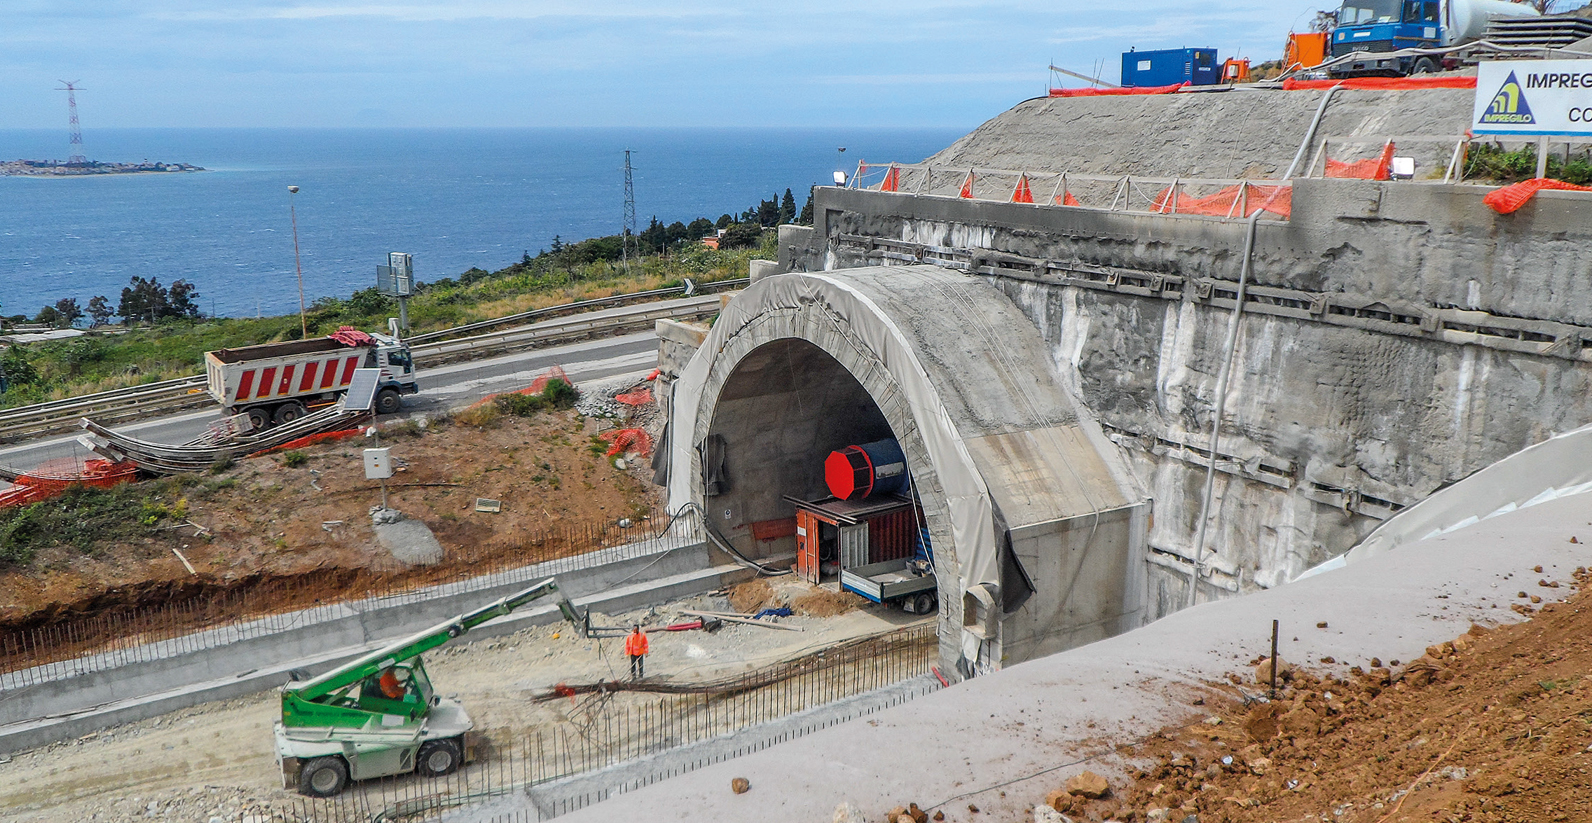 Salerno – Reggio Calabriamotorway, construction of the Pilone tunnel (Reggio Calabria)